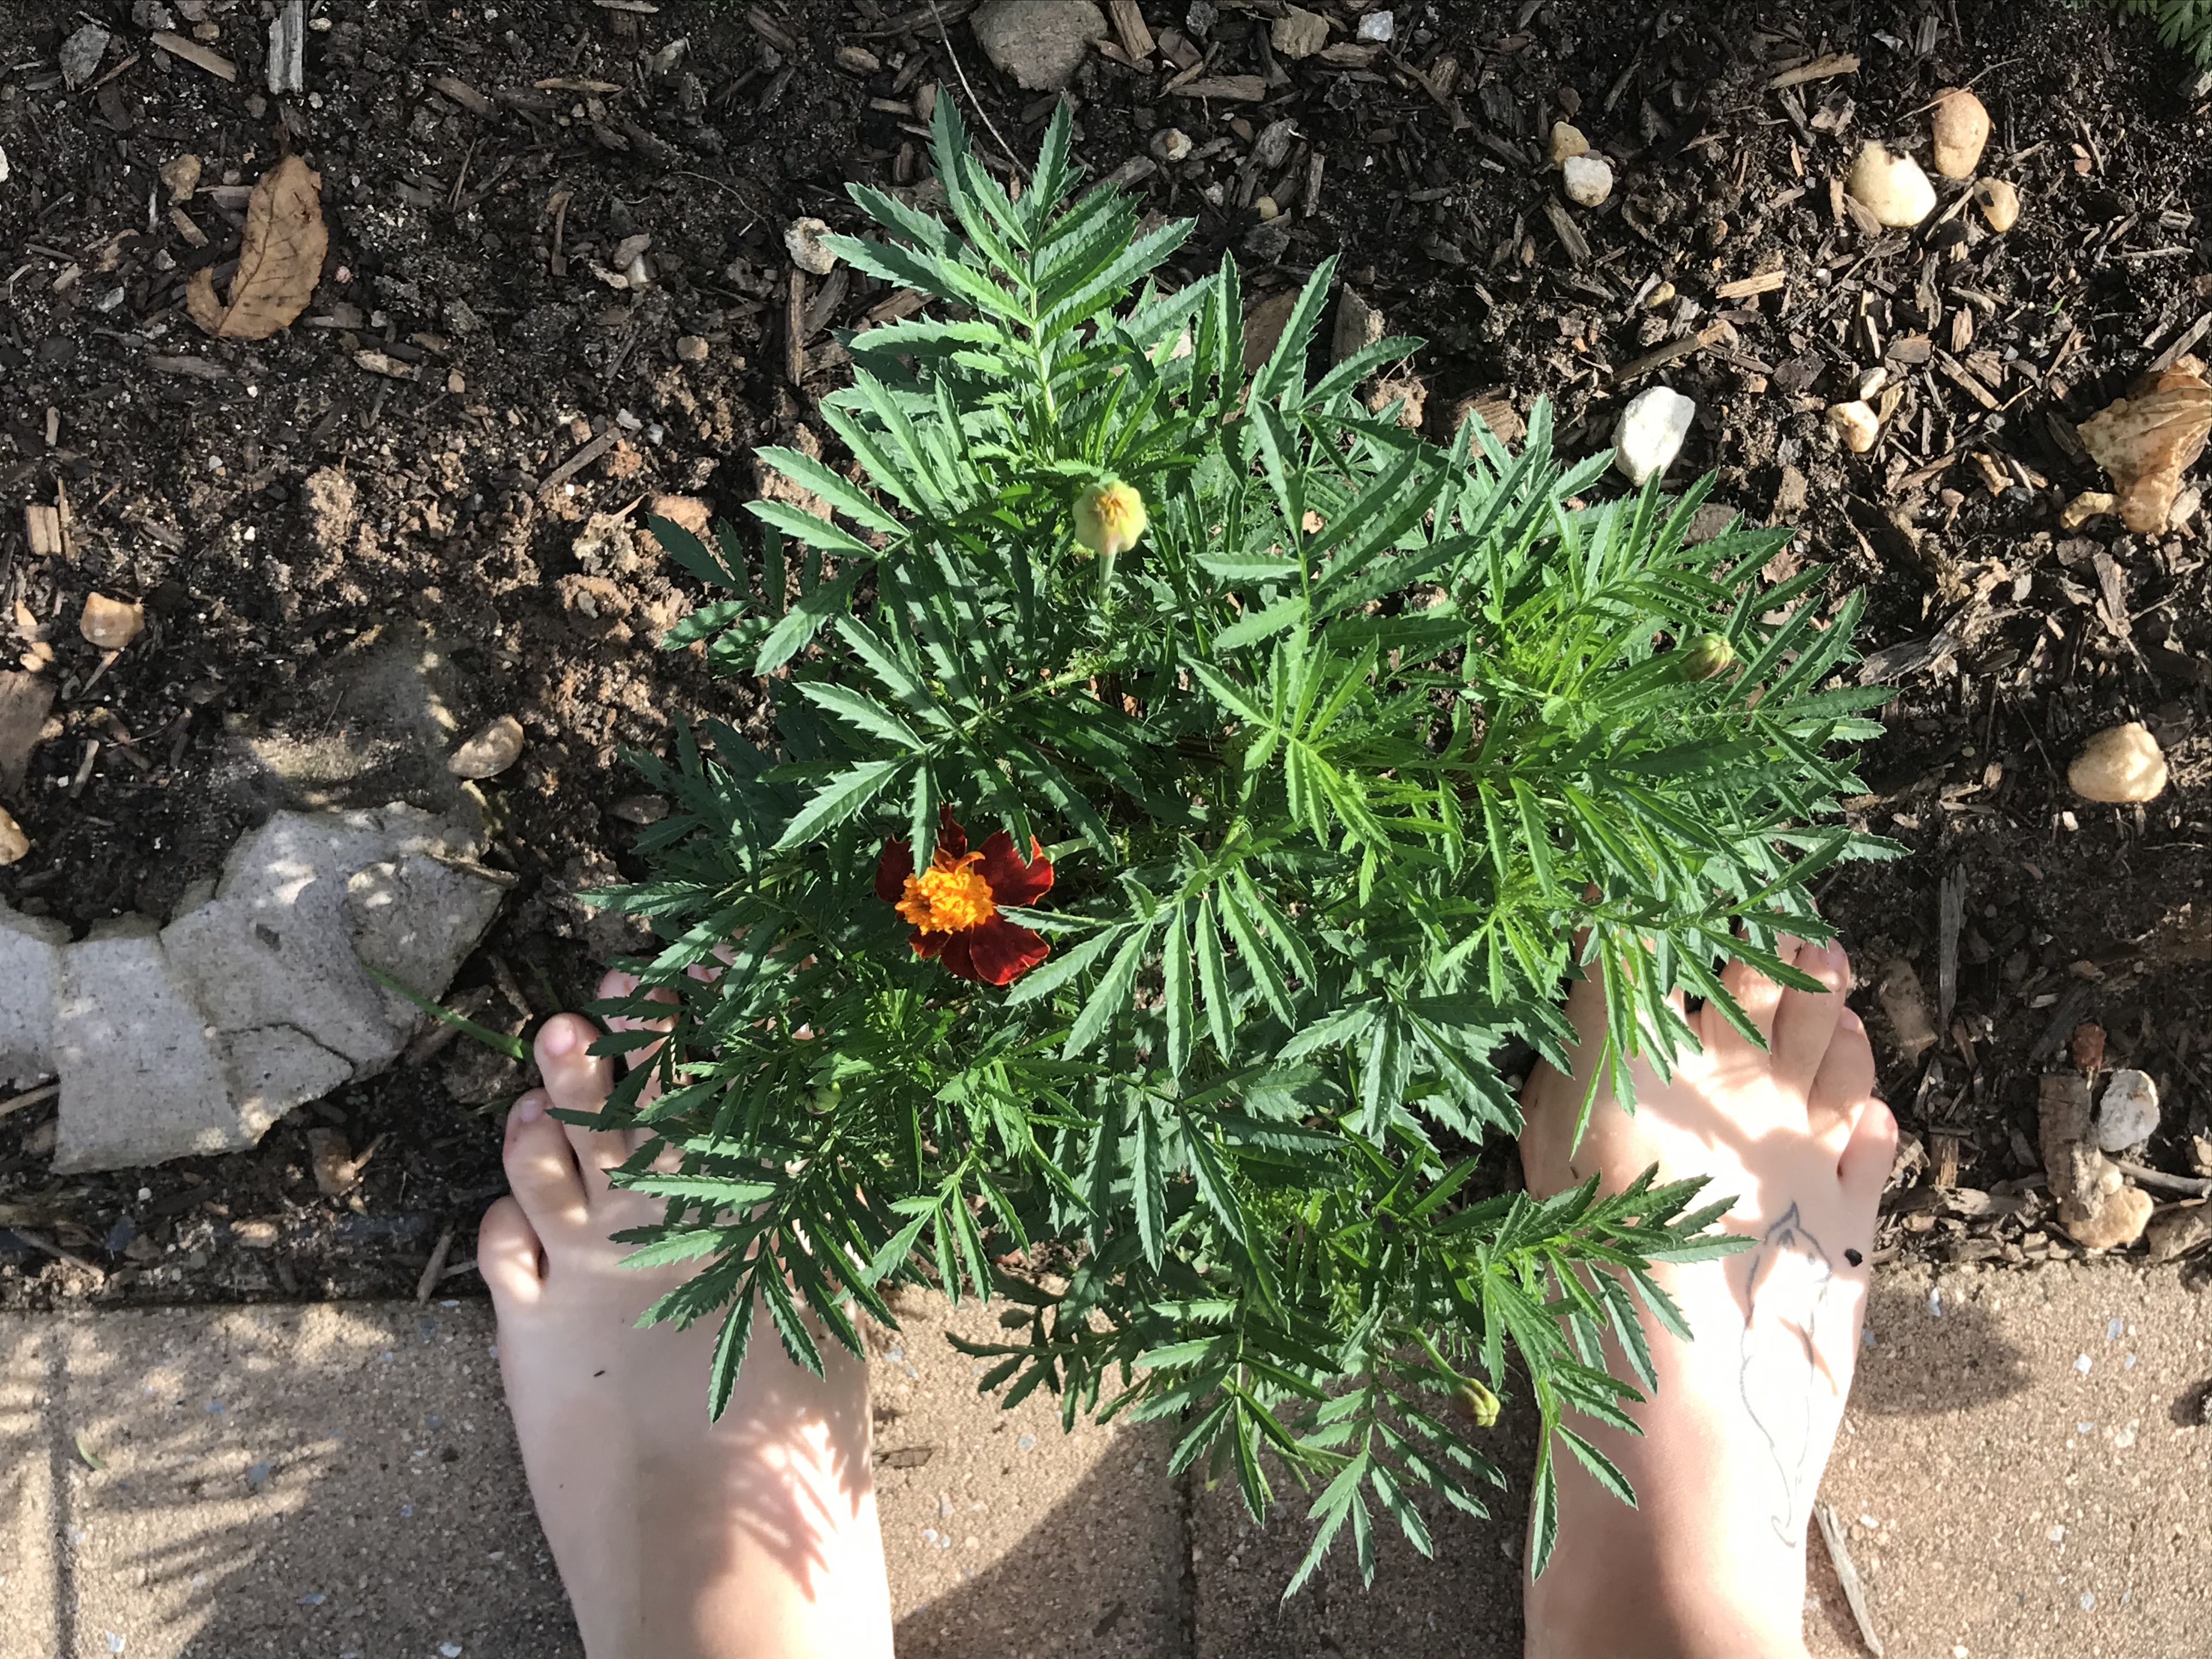 barefoot in garden soil